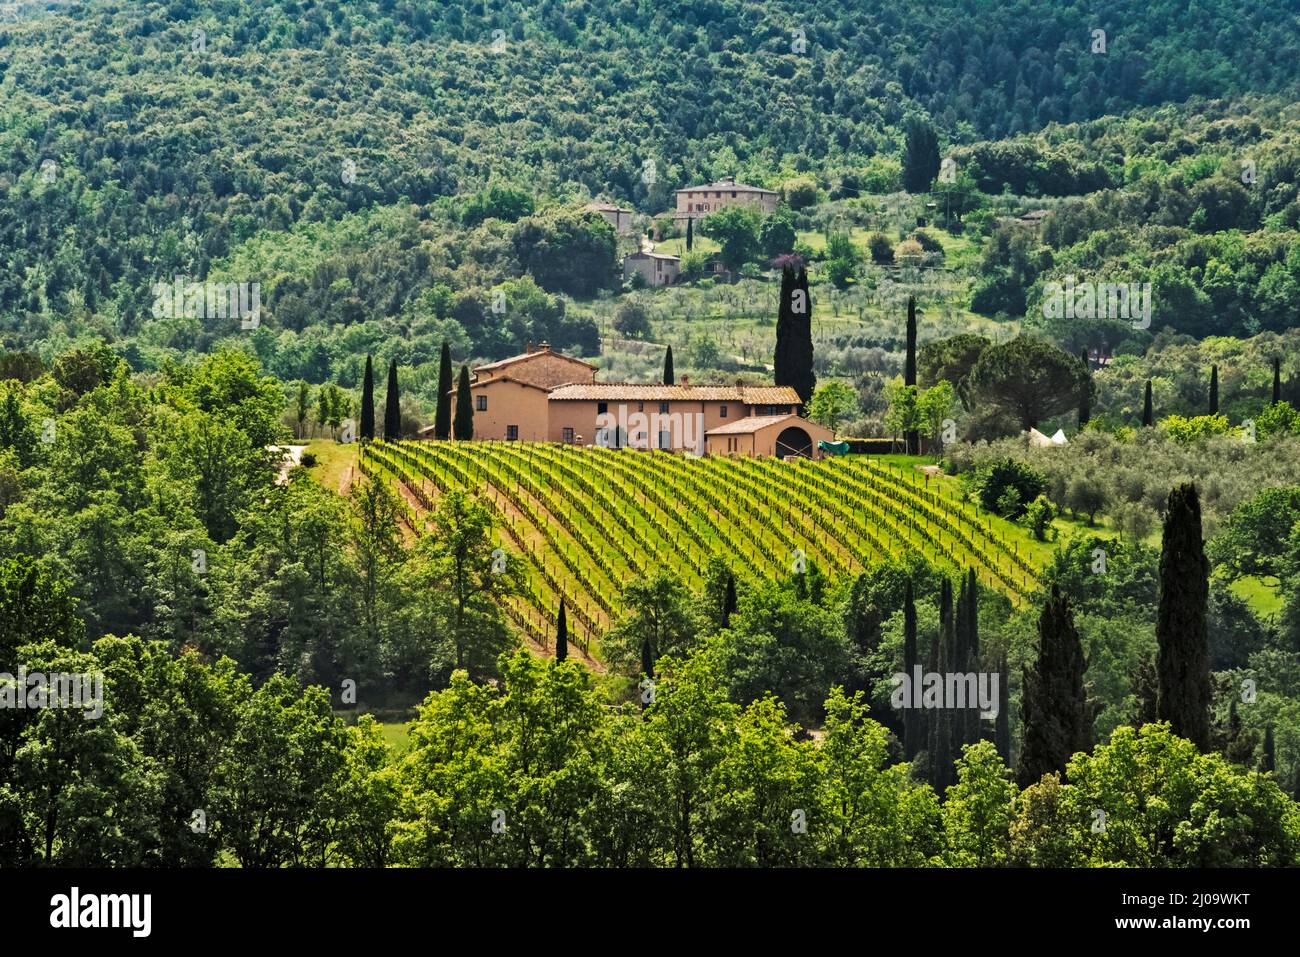 Maison de village et vignoble, province de Sienne, région de Toscane, Italie Banque D'Images